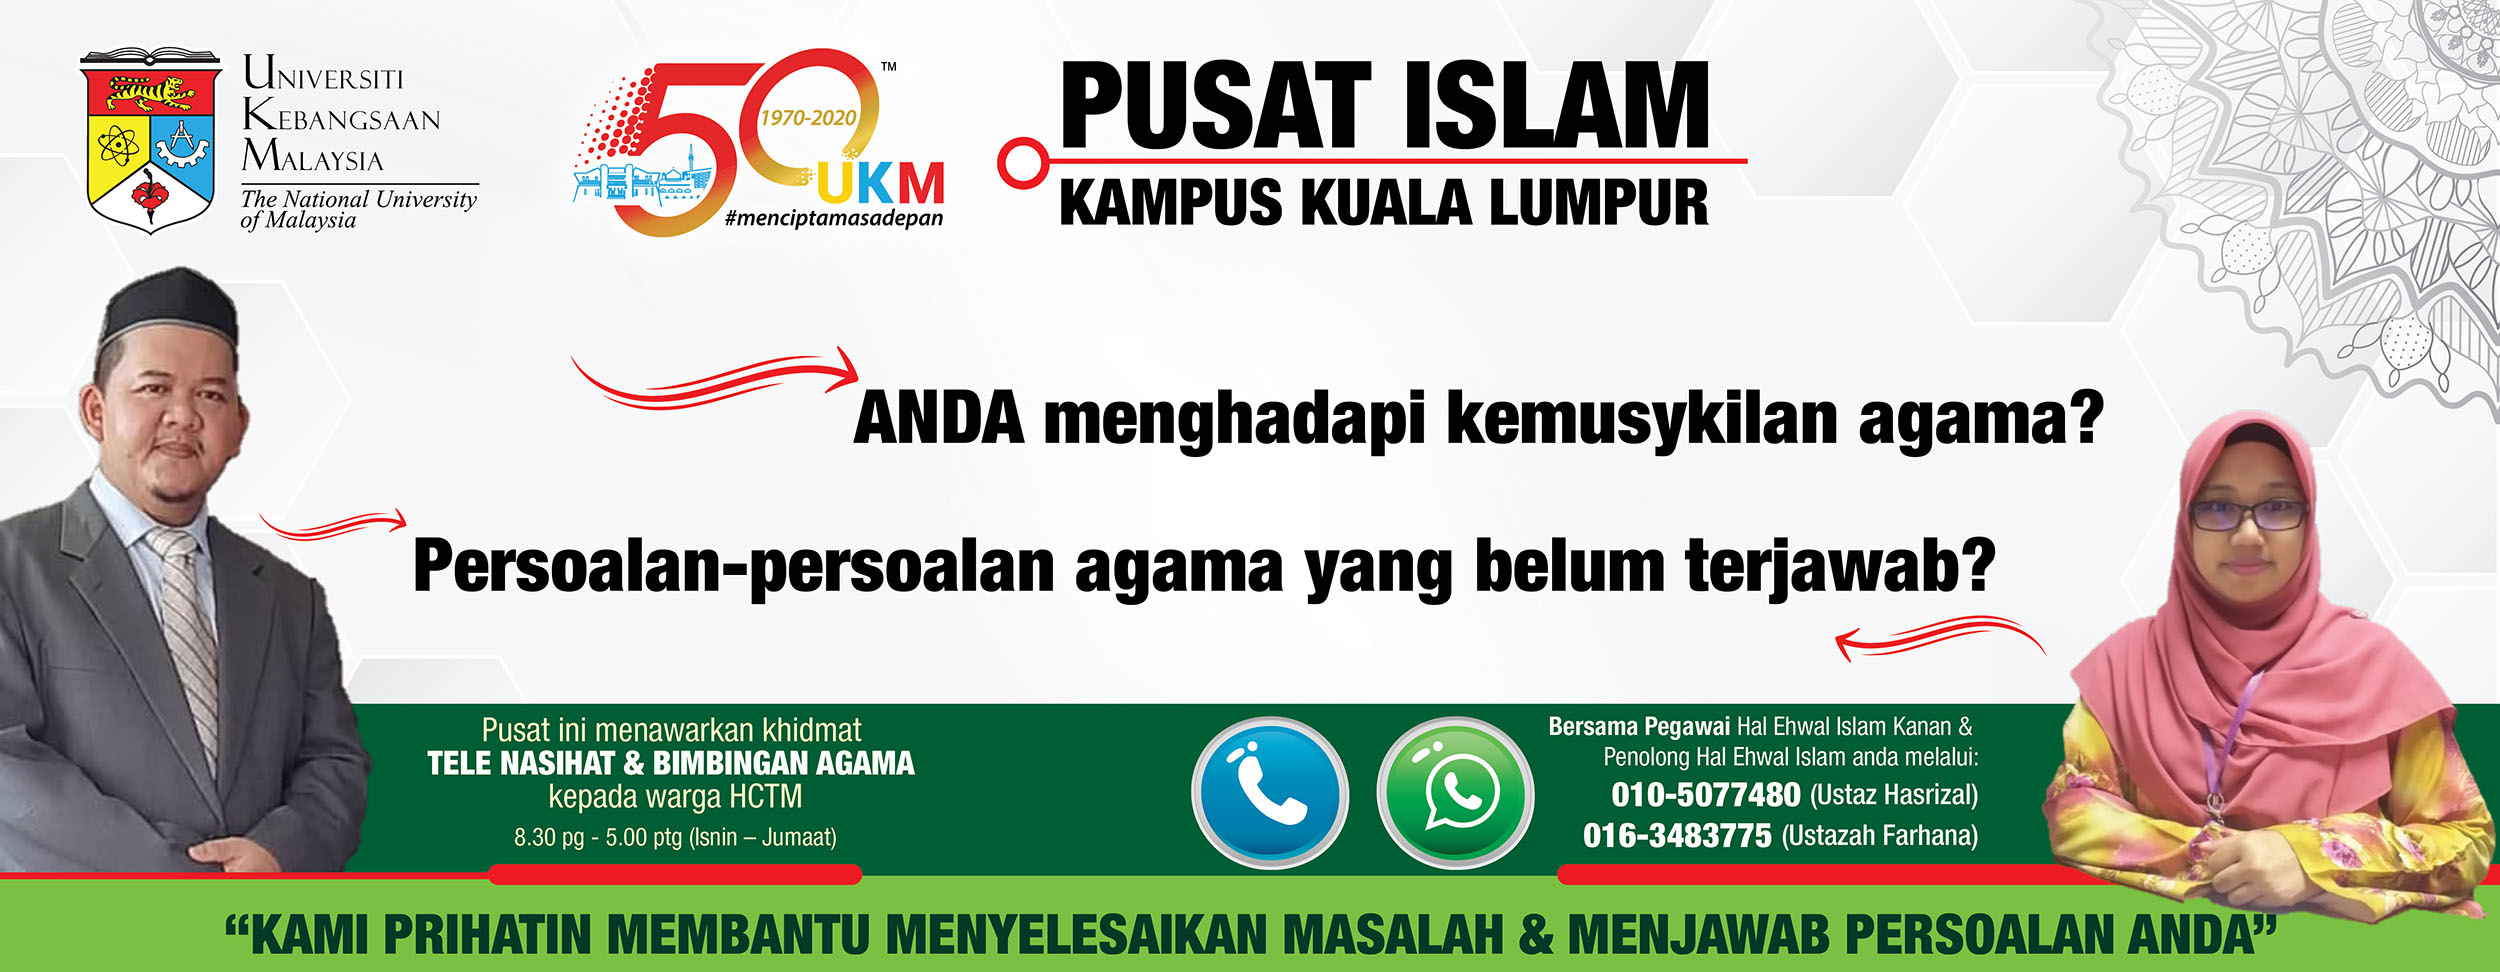 Pusat Islam KKL UKM